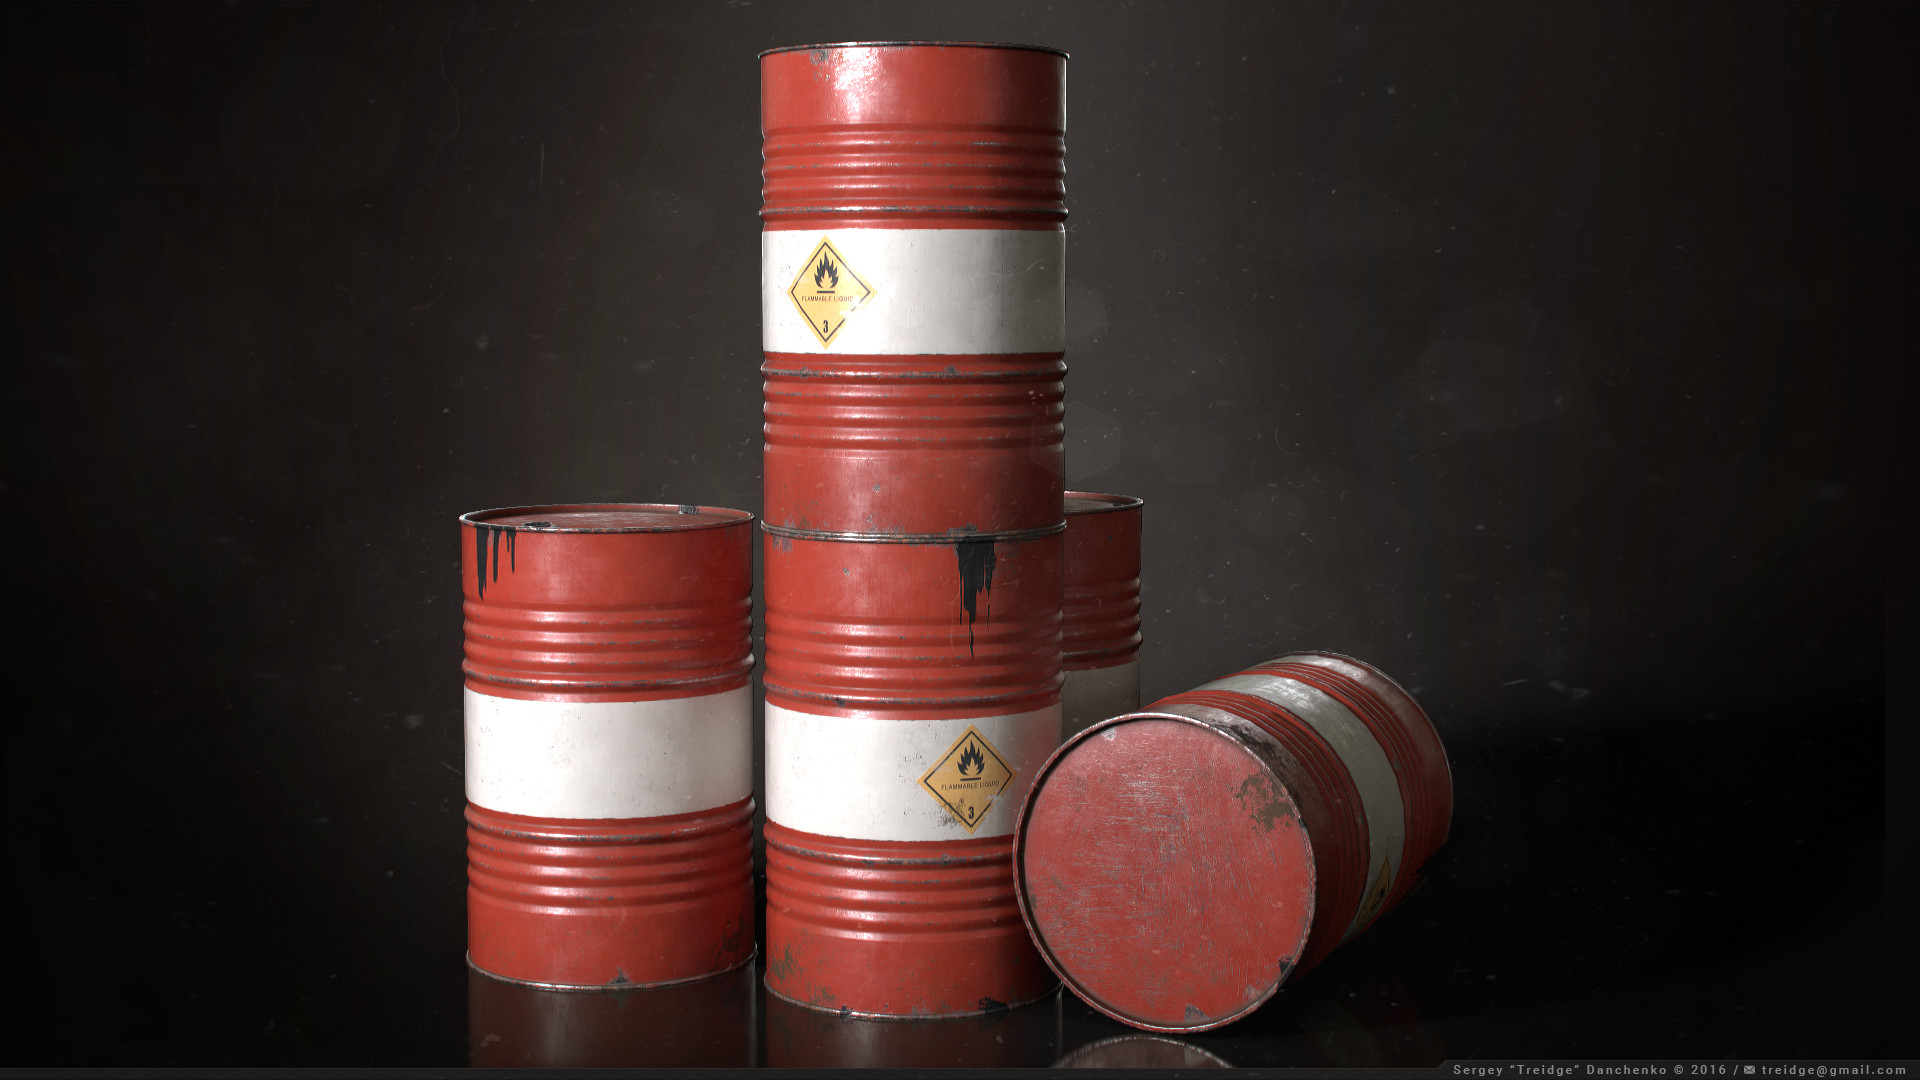 ArtStation - Oil Drum / Barrel Prop, Sergey Danchenko